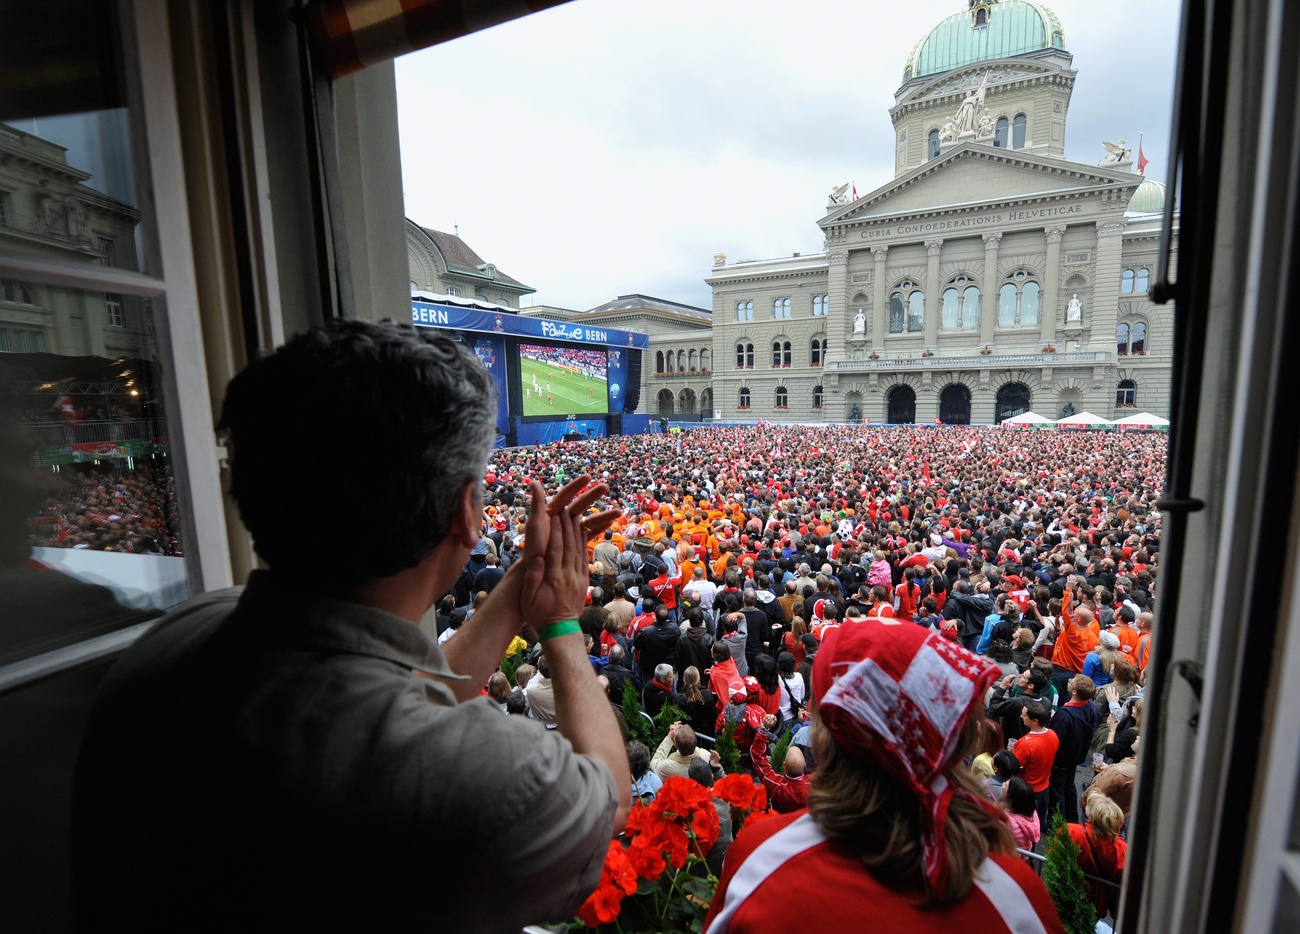 مئات الأشخاص يتابعون بثا لمقابلة كرة قدم على شاشة عملاقة